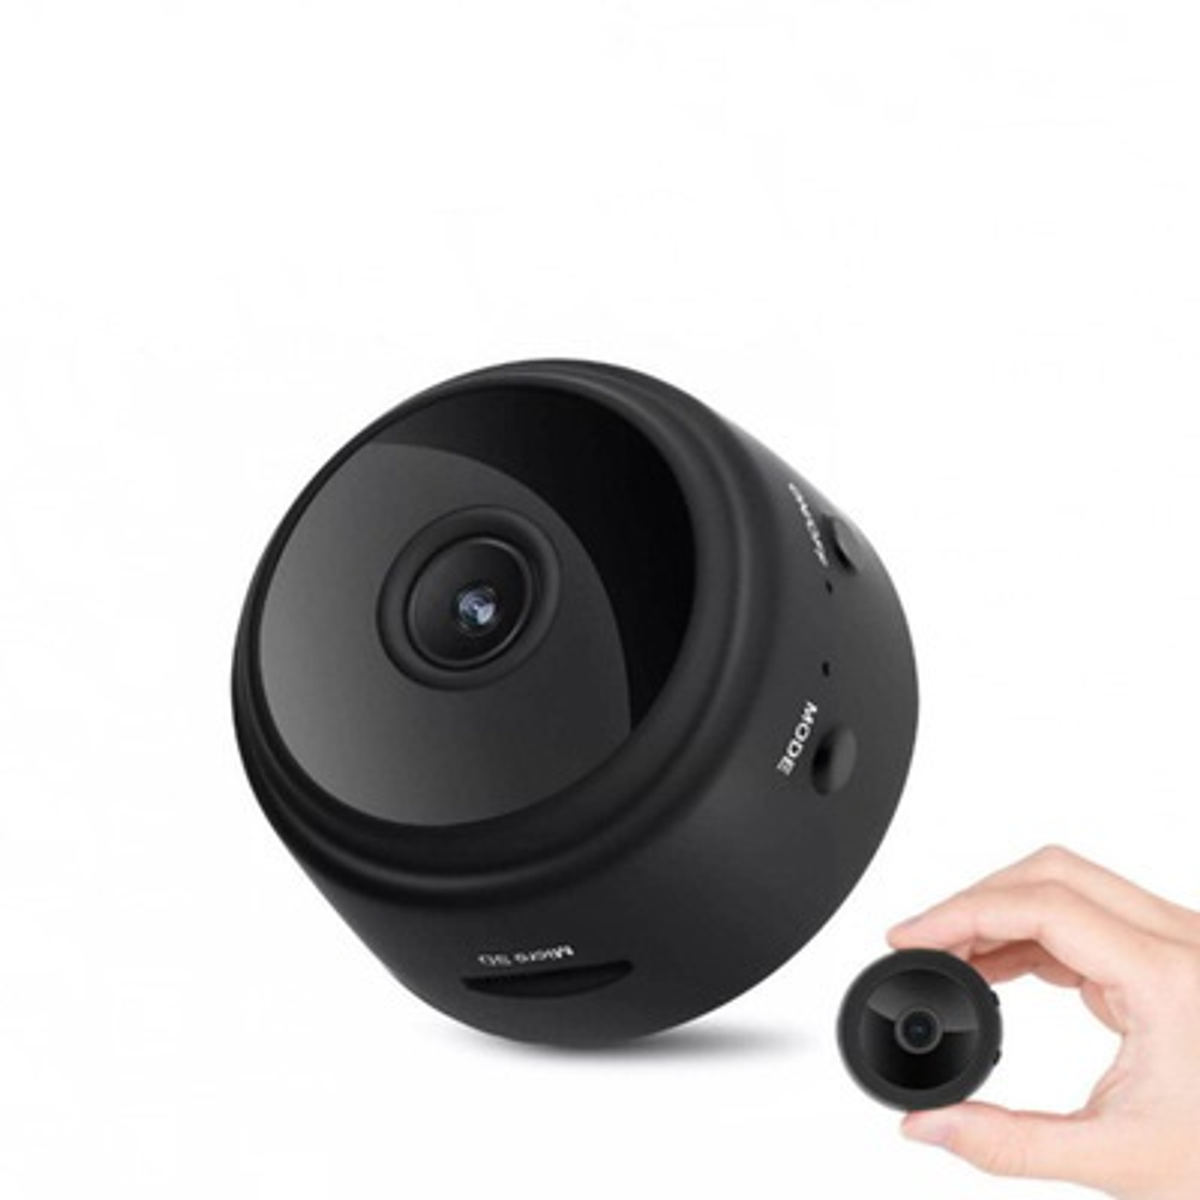 Mini cámara redonda wifi con visión nocturna y resolución hd 1080p